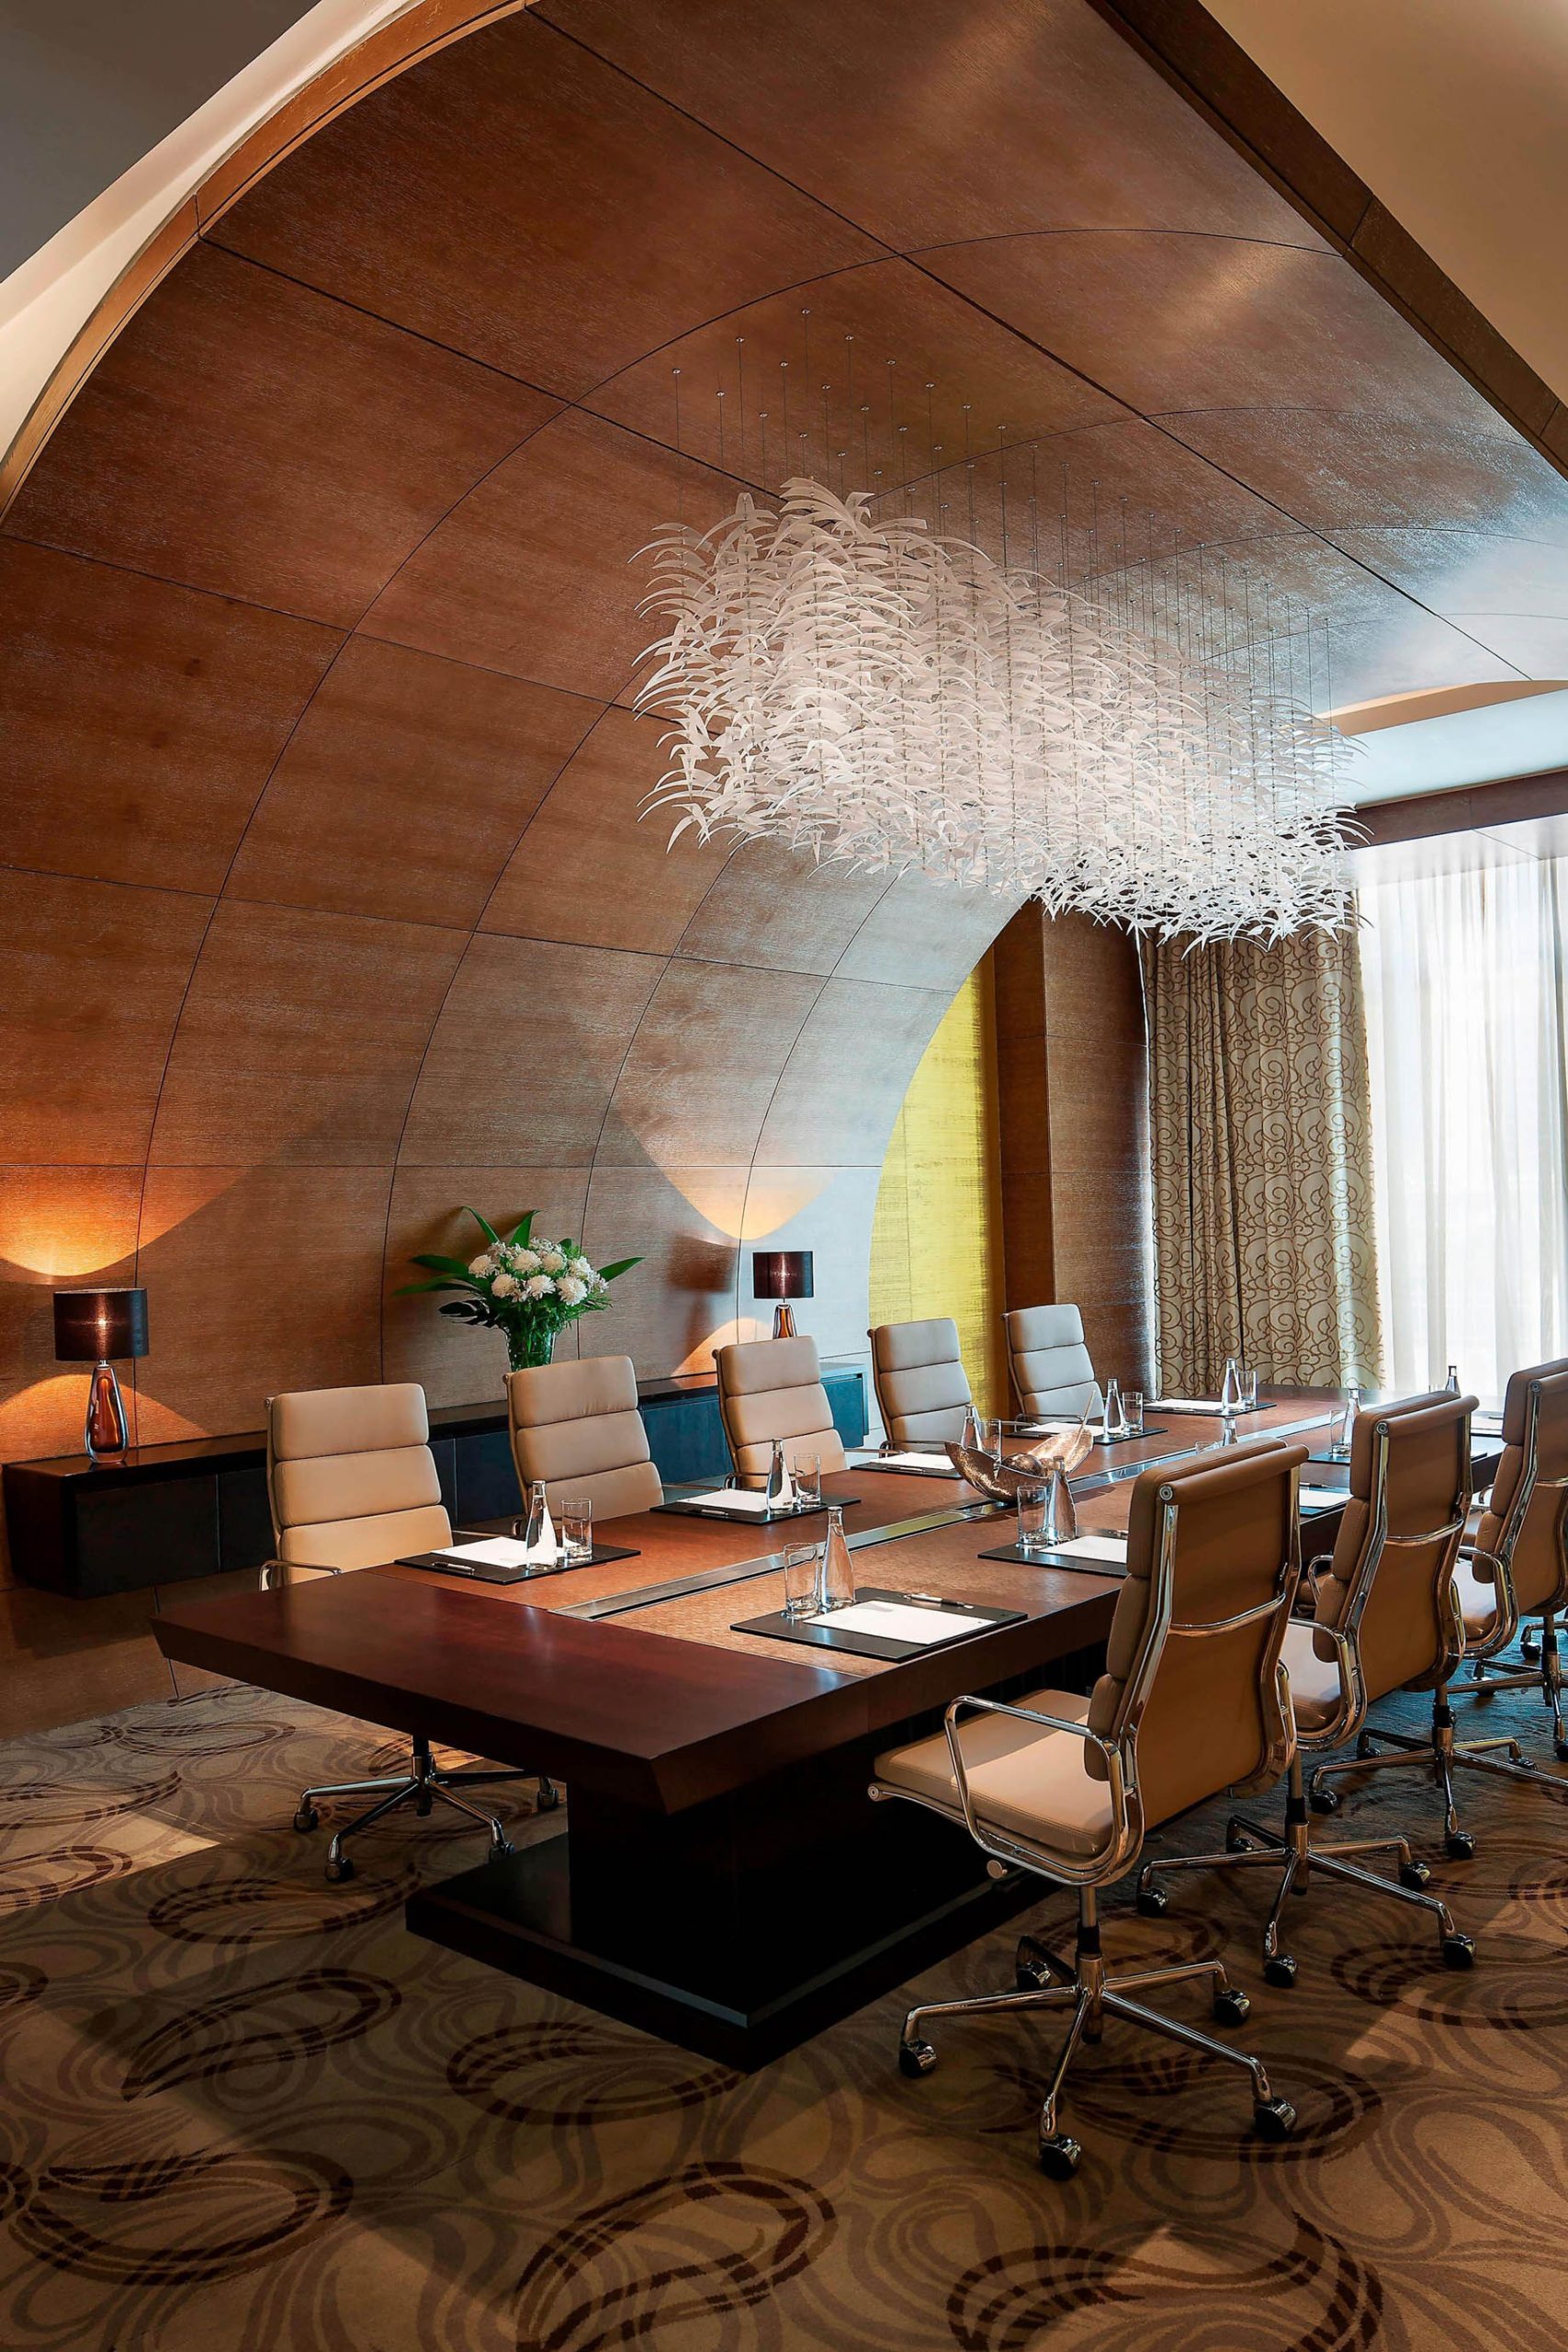 JW Marriott Absheron Baku Hotel – Baku, Azerbaijan – Lokbatan Boardroom